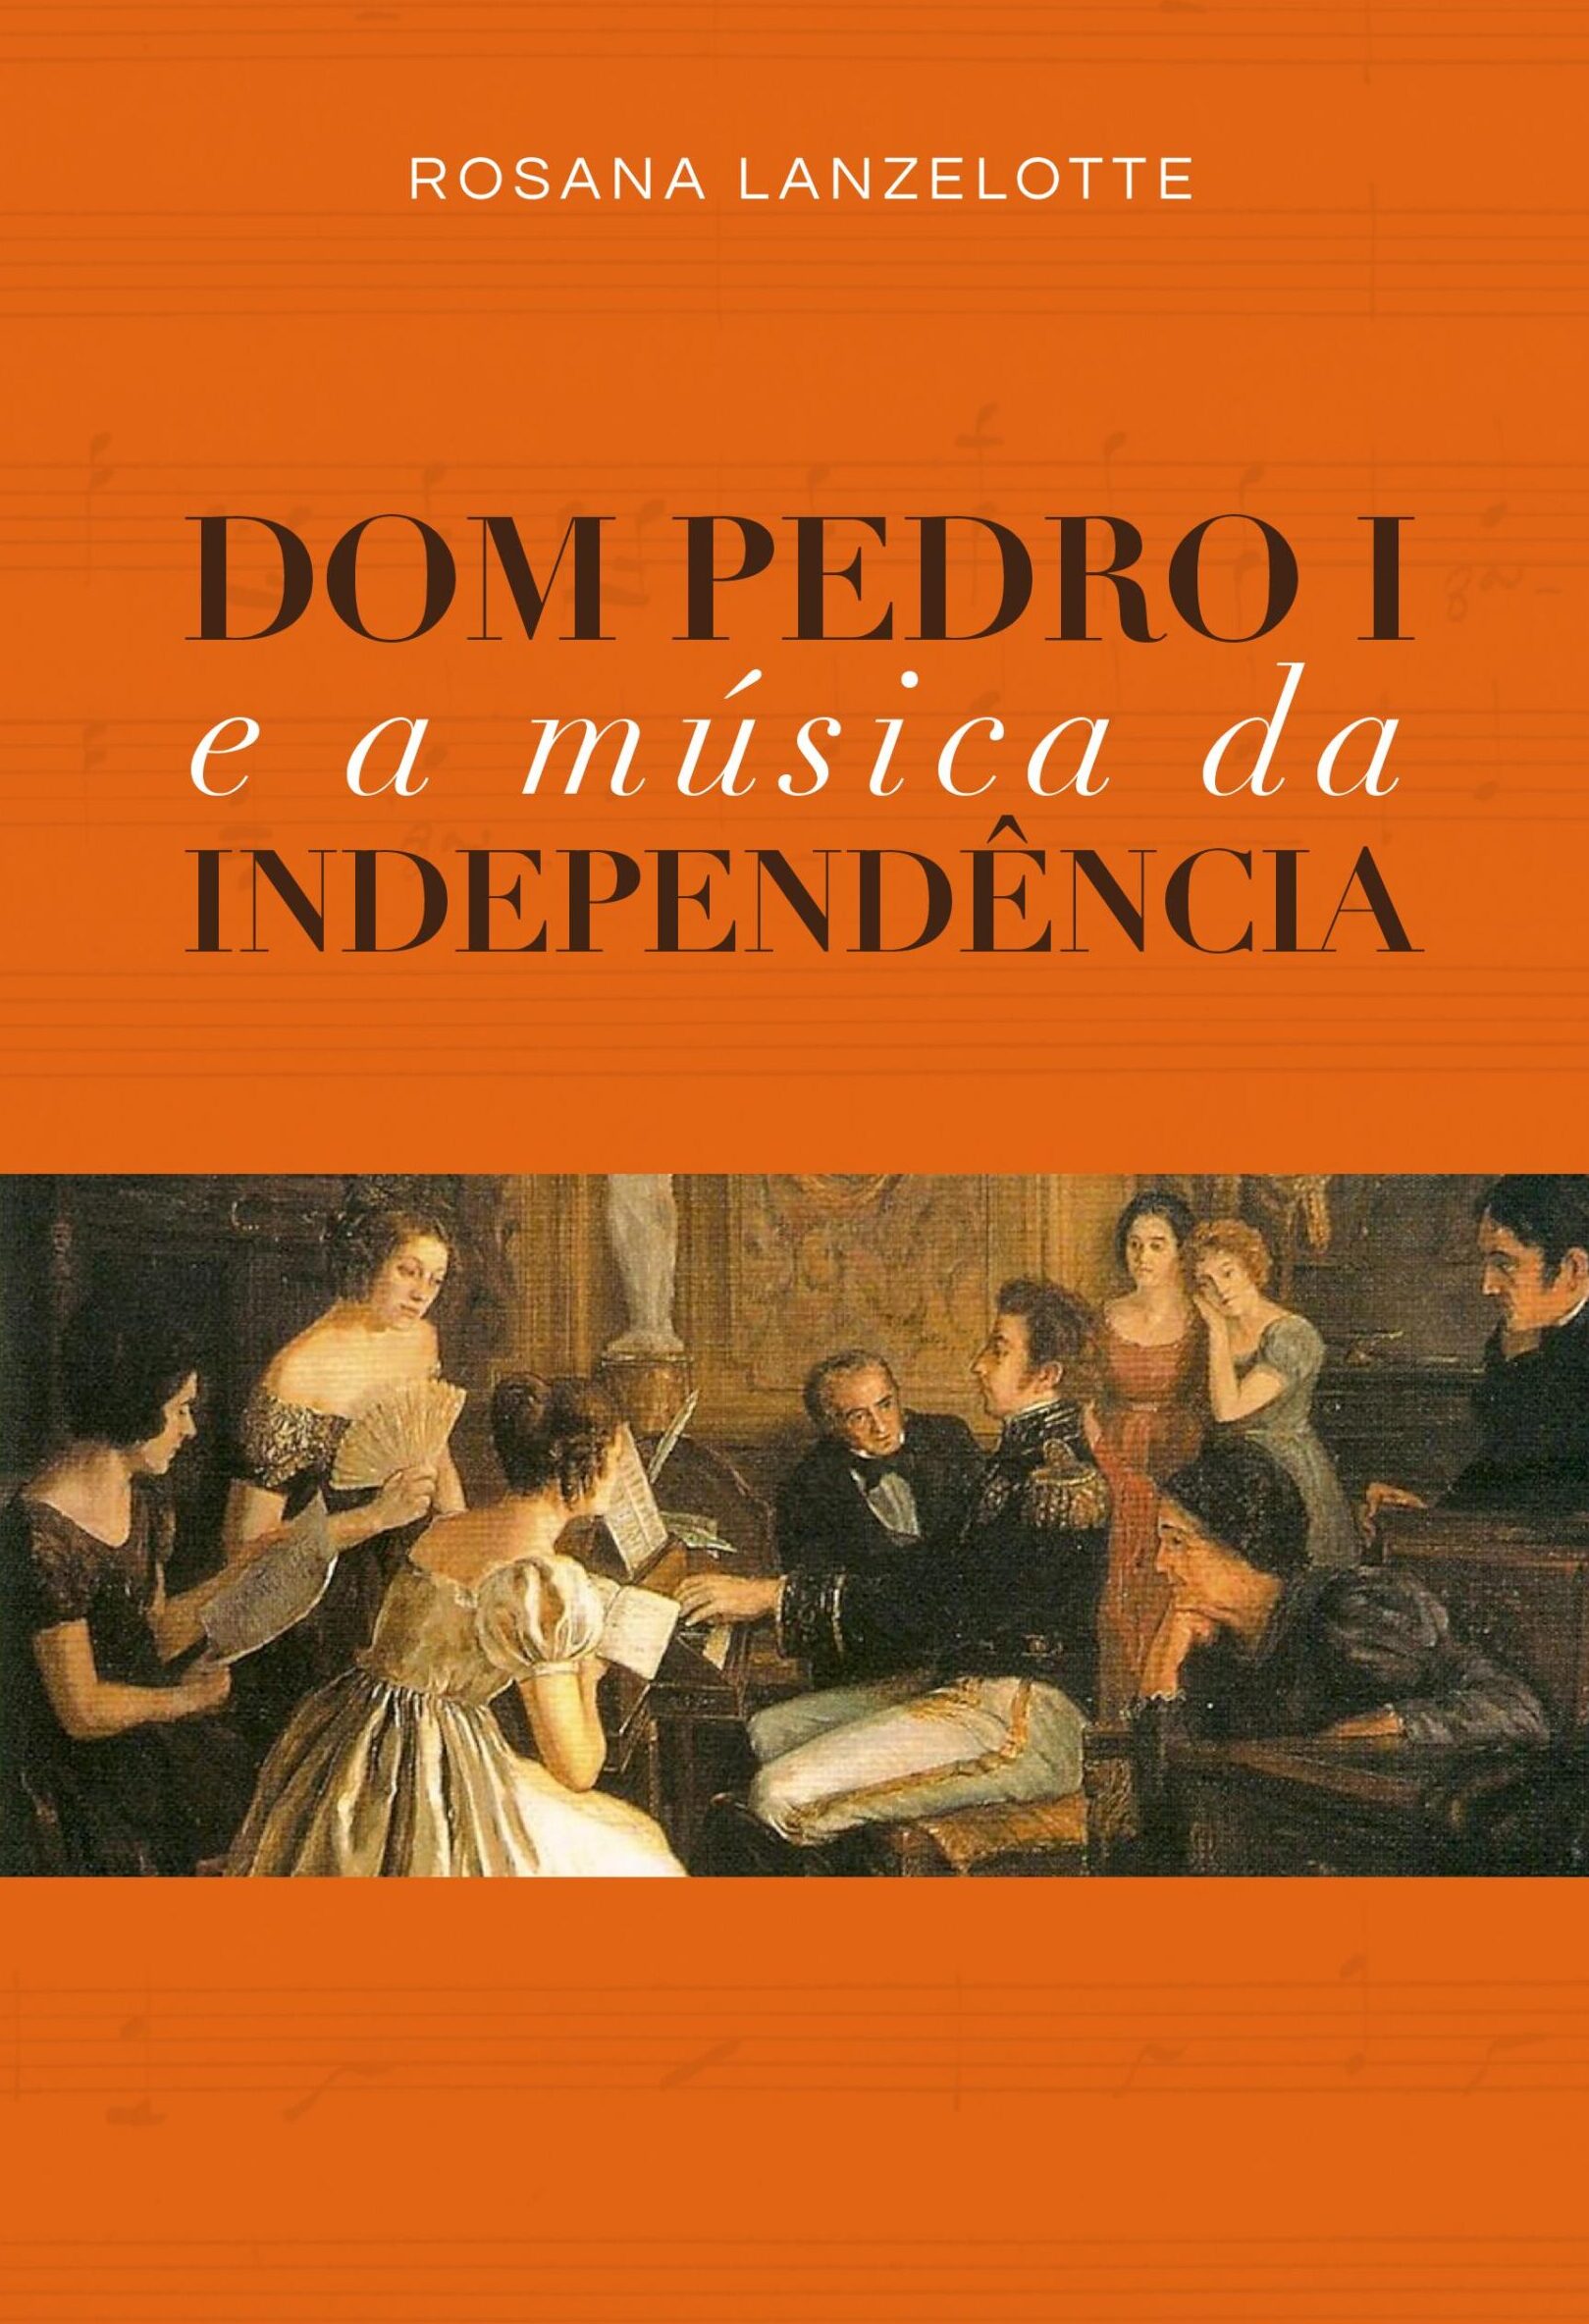 D. Pedro I e a música da Independência – e-book de autoria de Rosana Lanzelotte